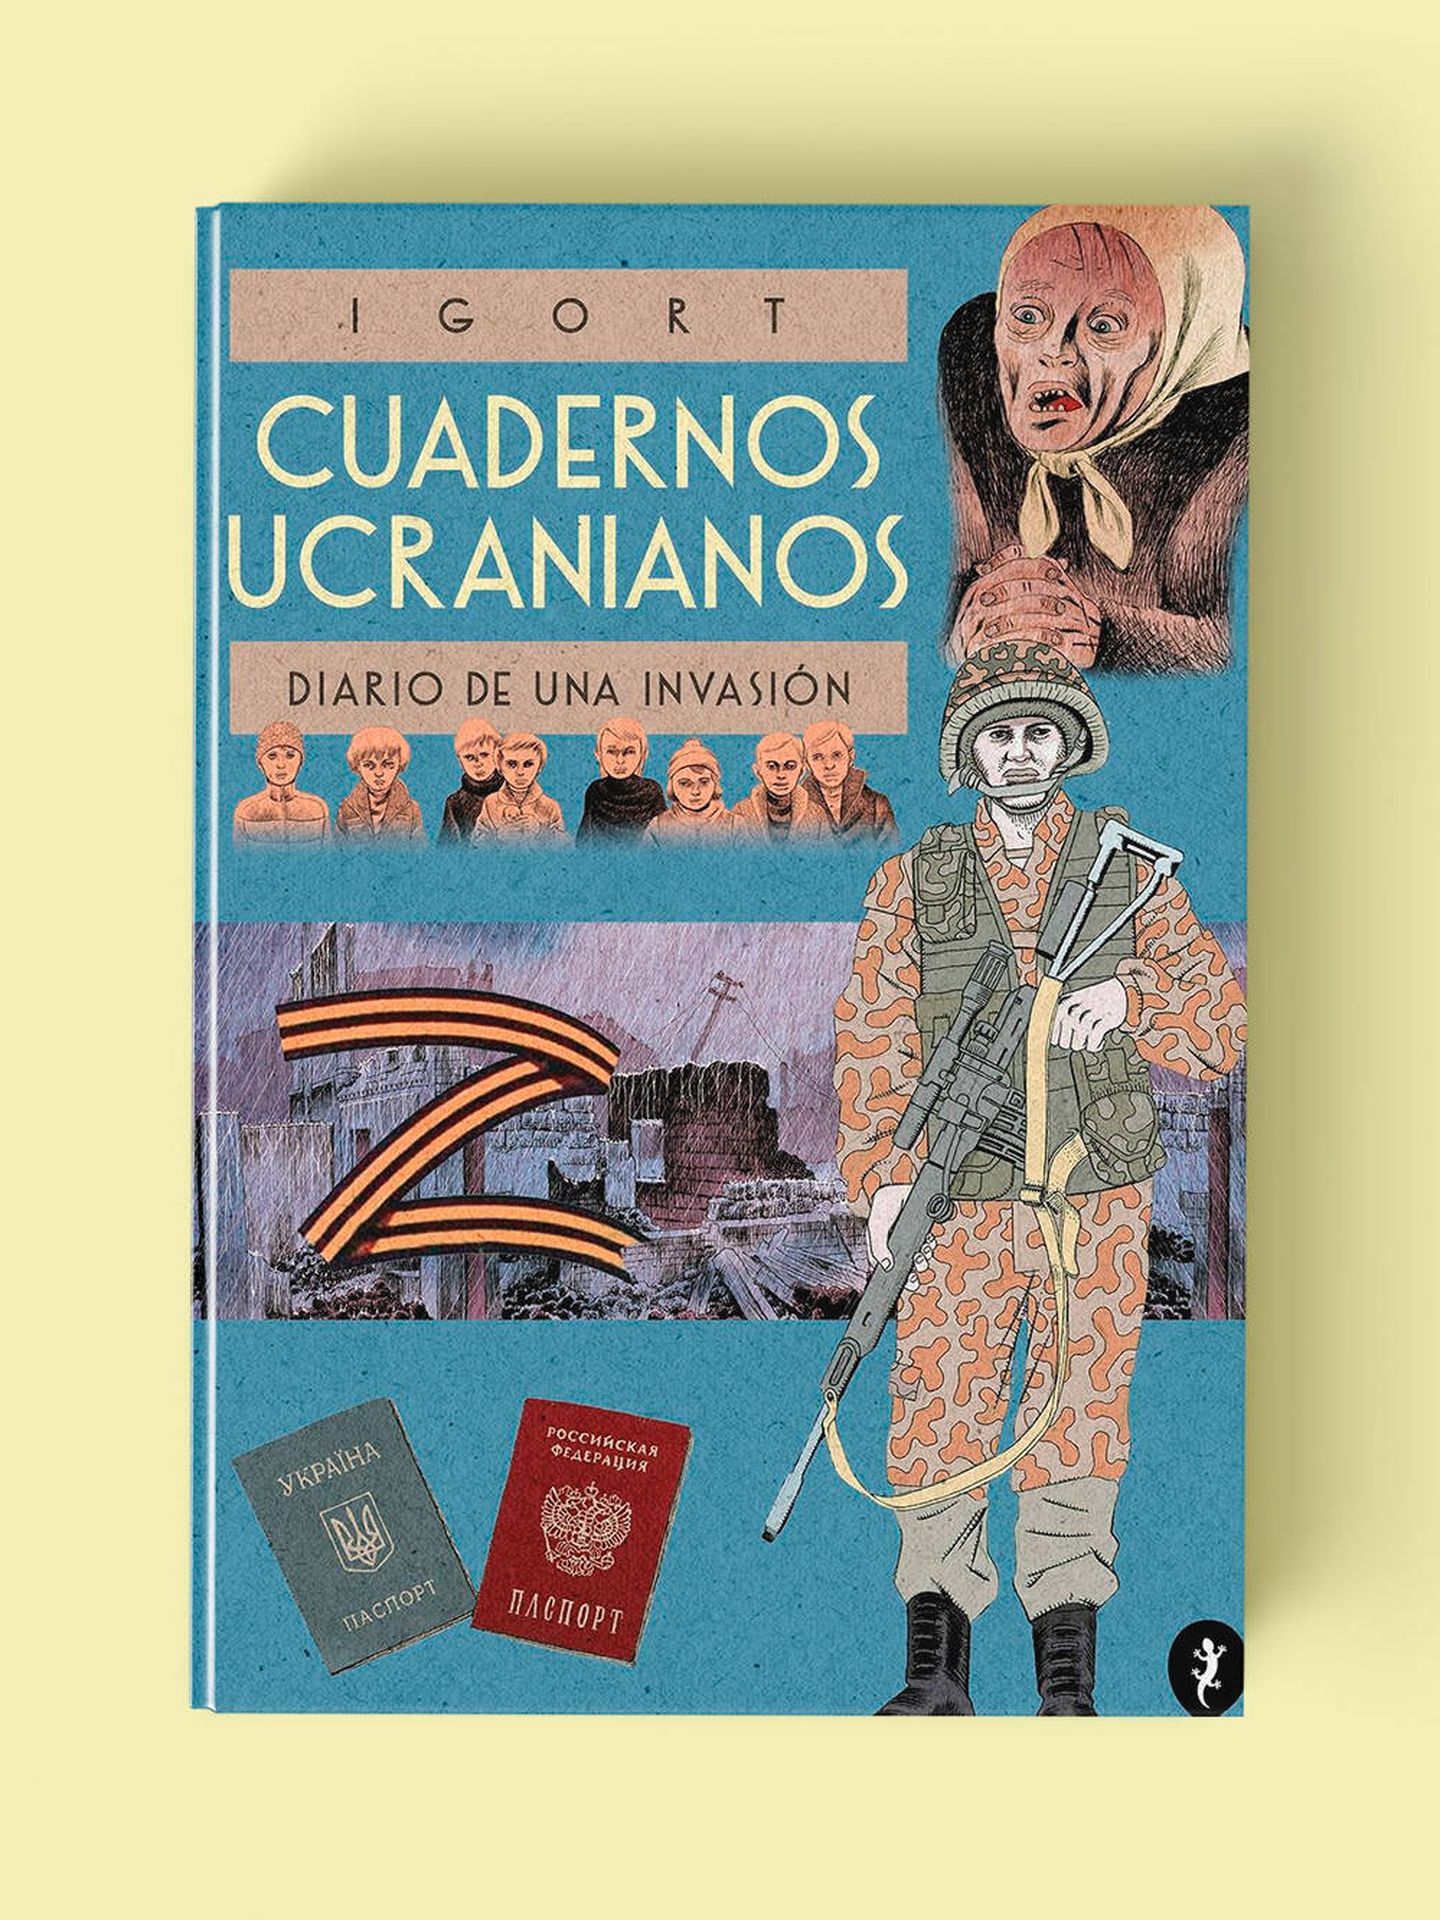 'Cuadernos ucranianos. Diario de una invasión' de Igort. (Salamandra Graphic)